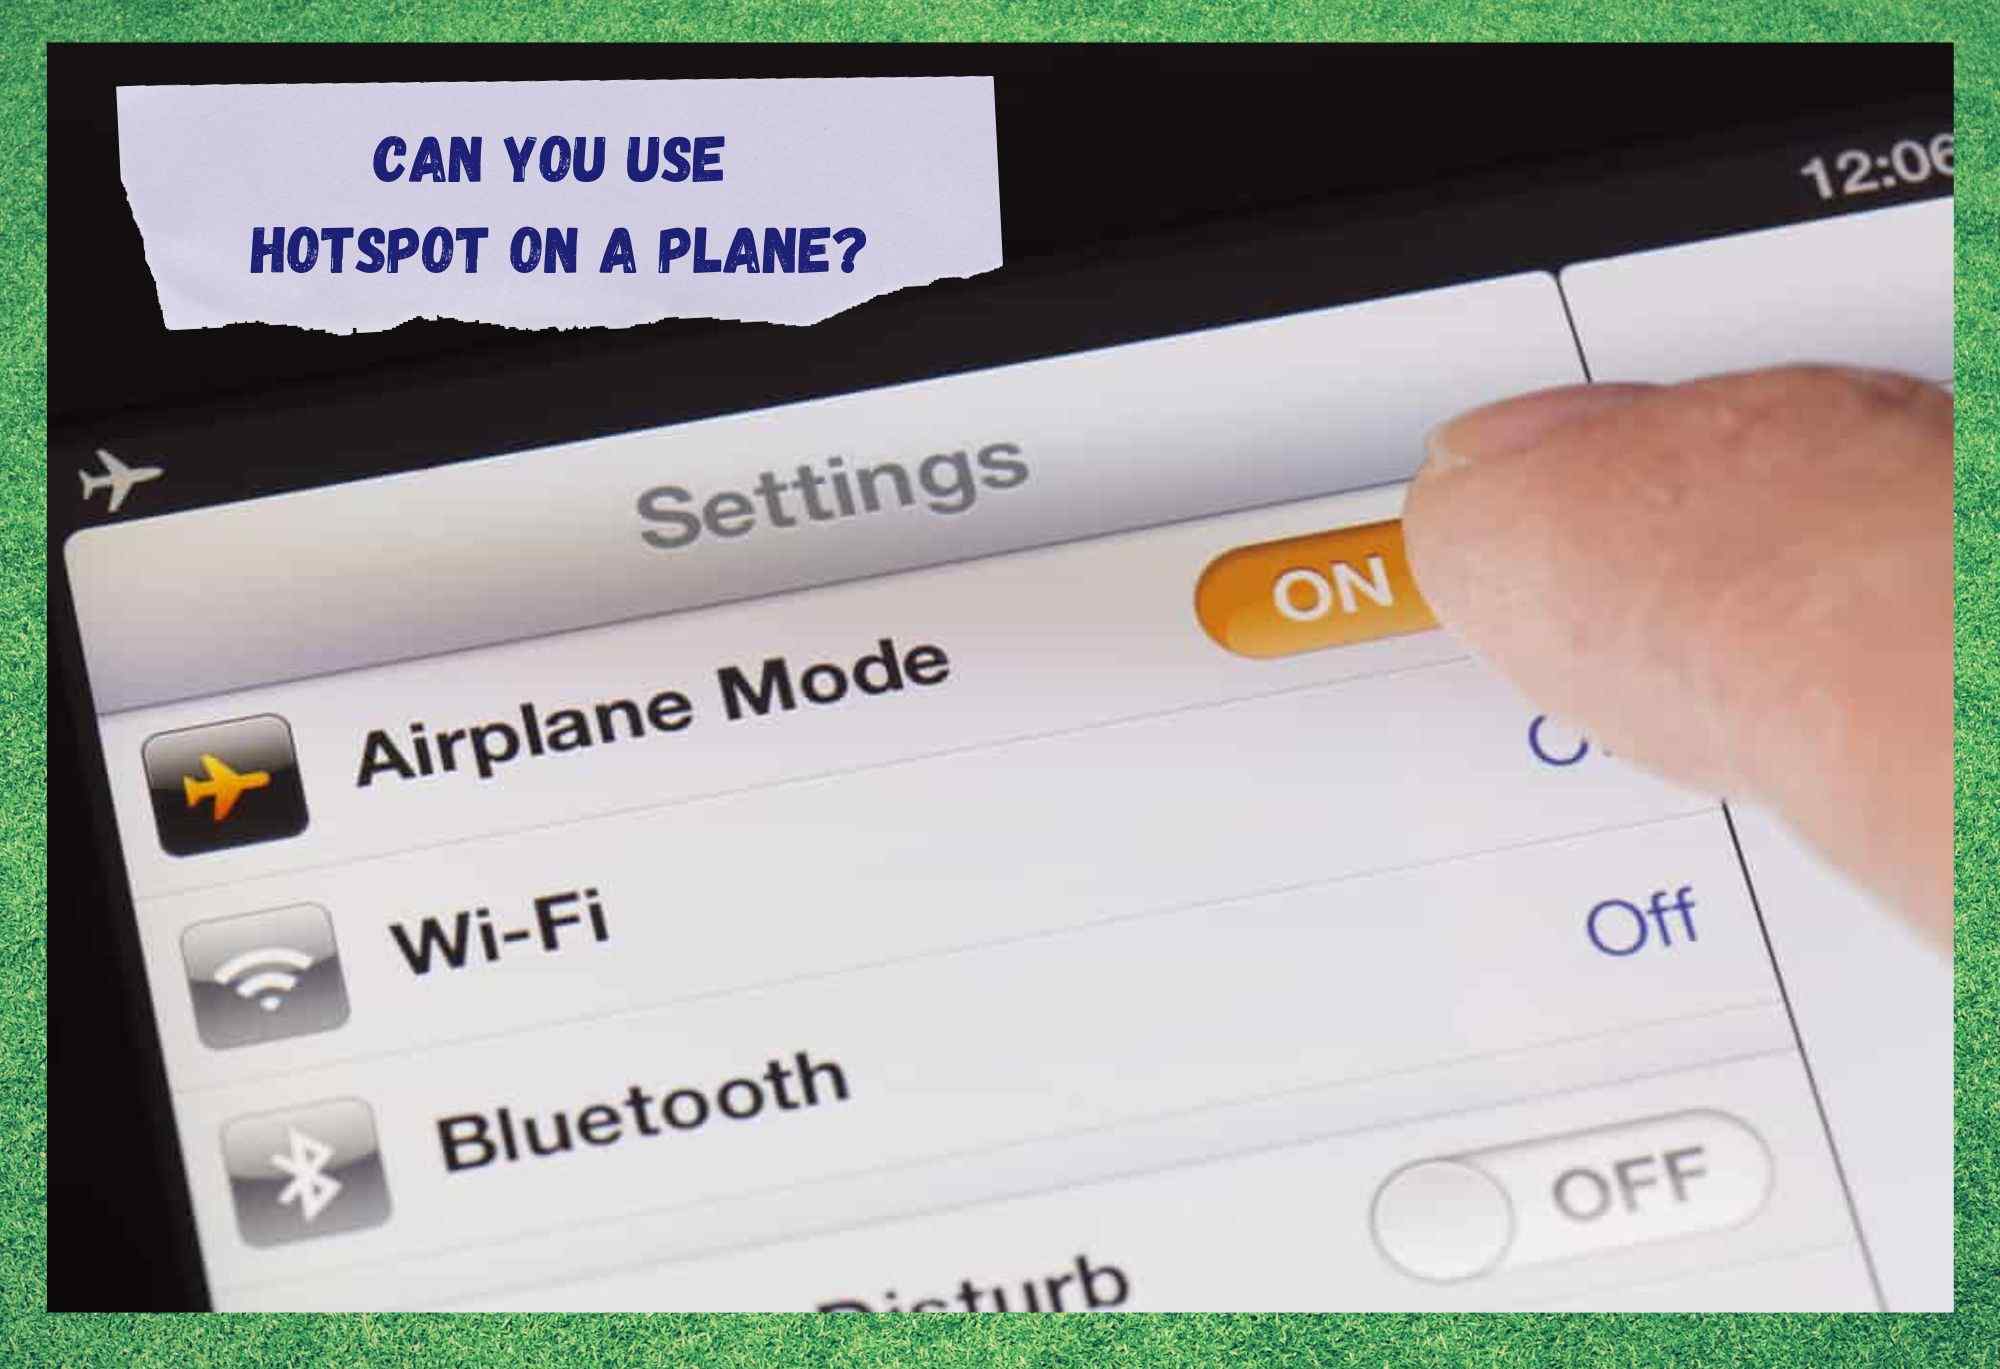 ¿Se puede utilizar un Hotspot en un avión? (Respuesta)